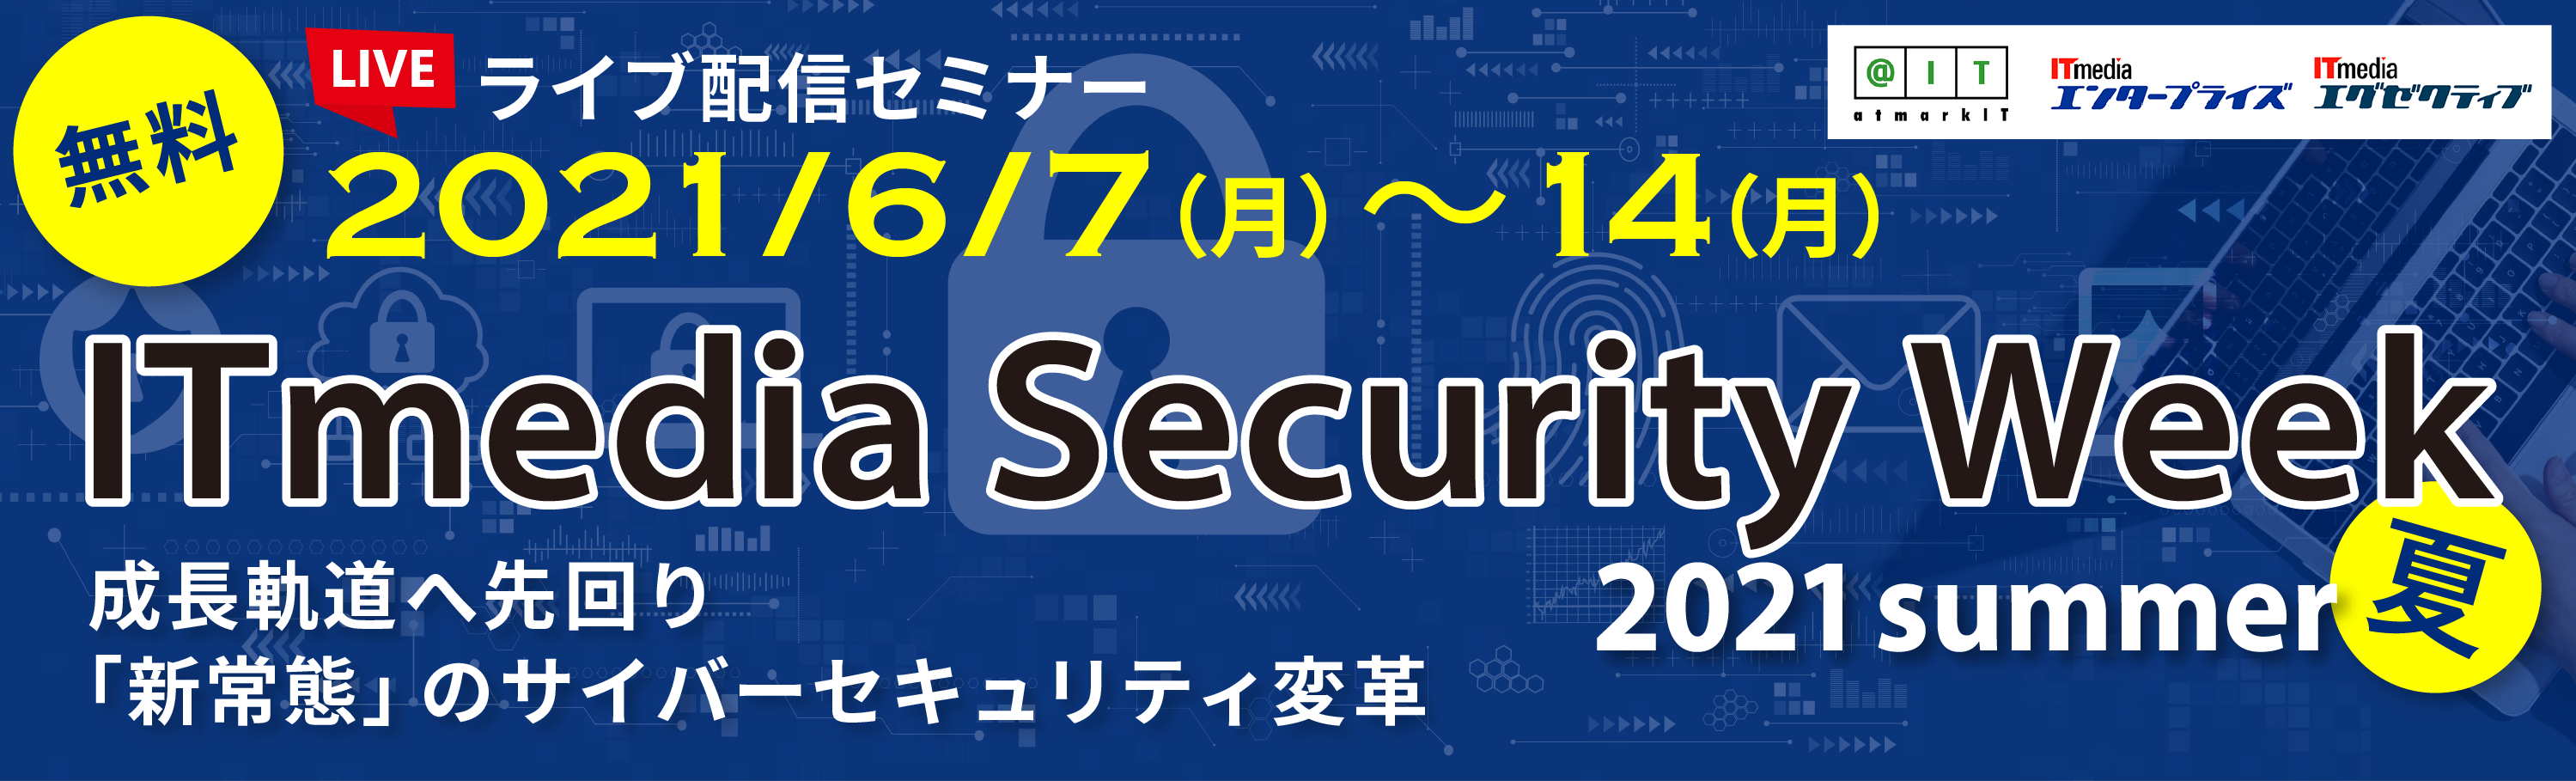 itmedia-security-week-2021-summer.png